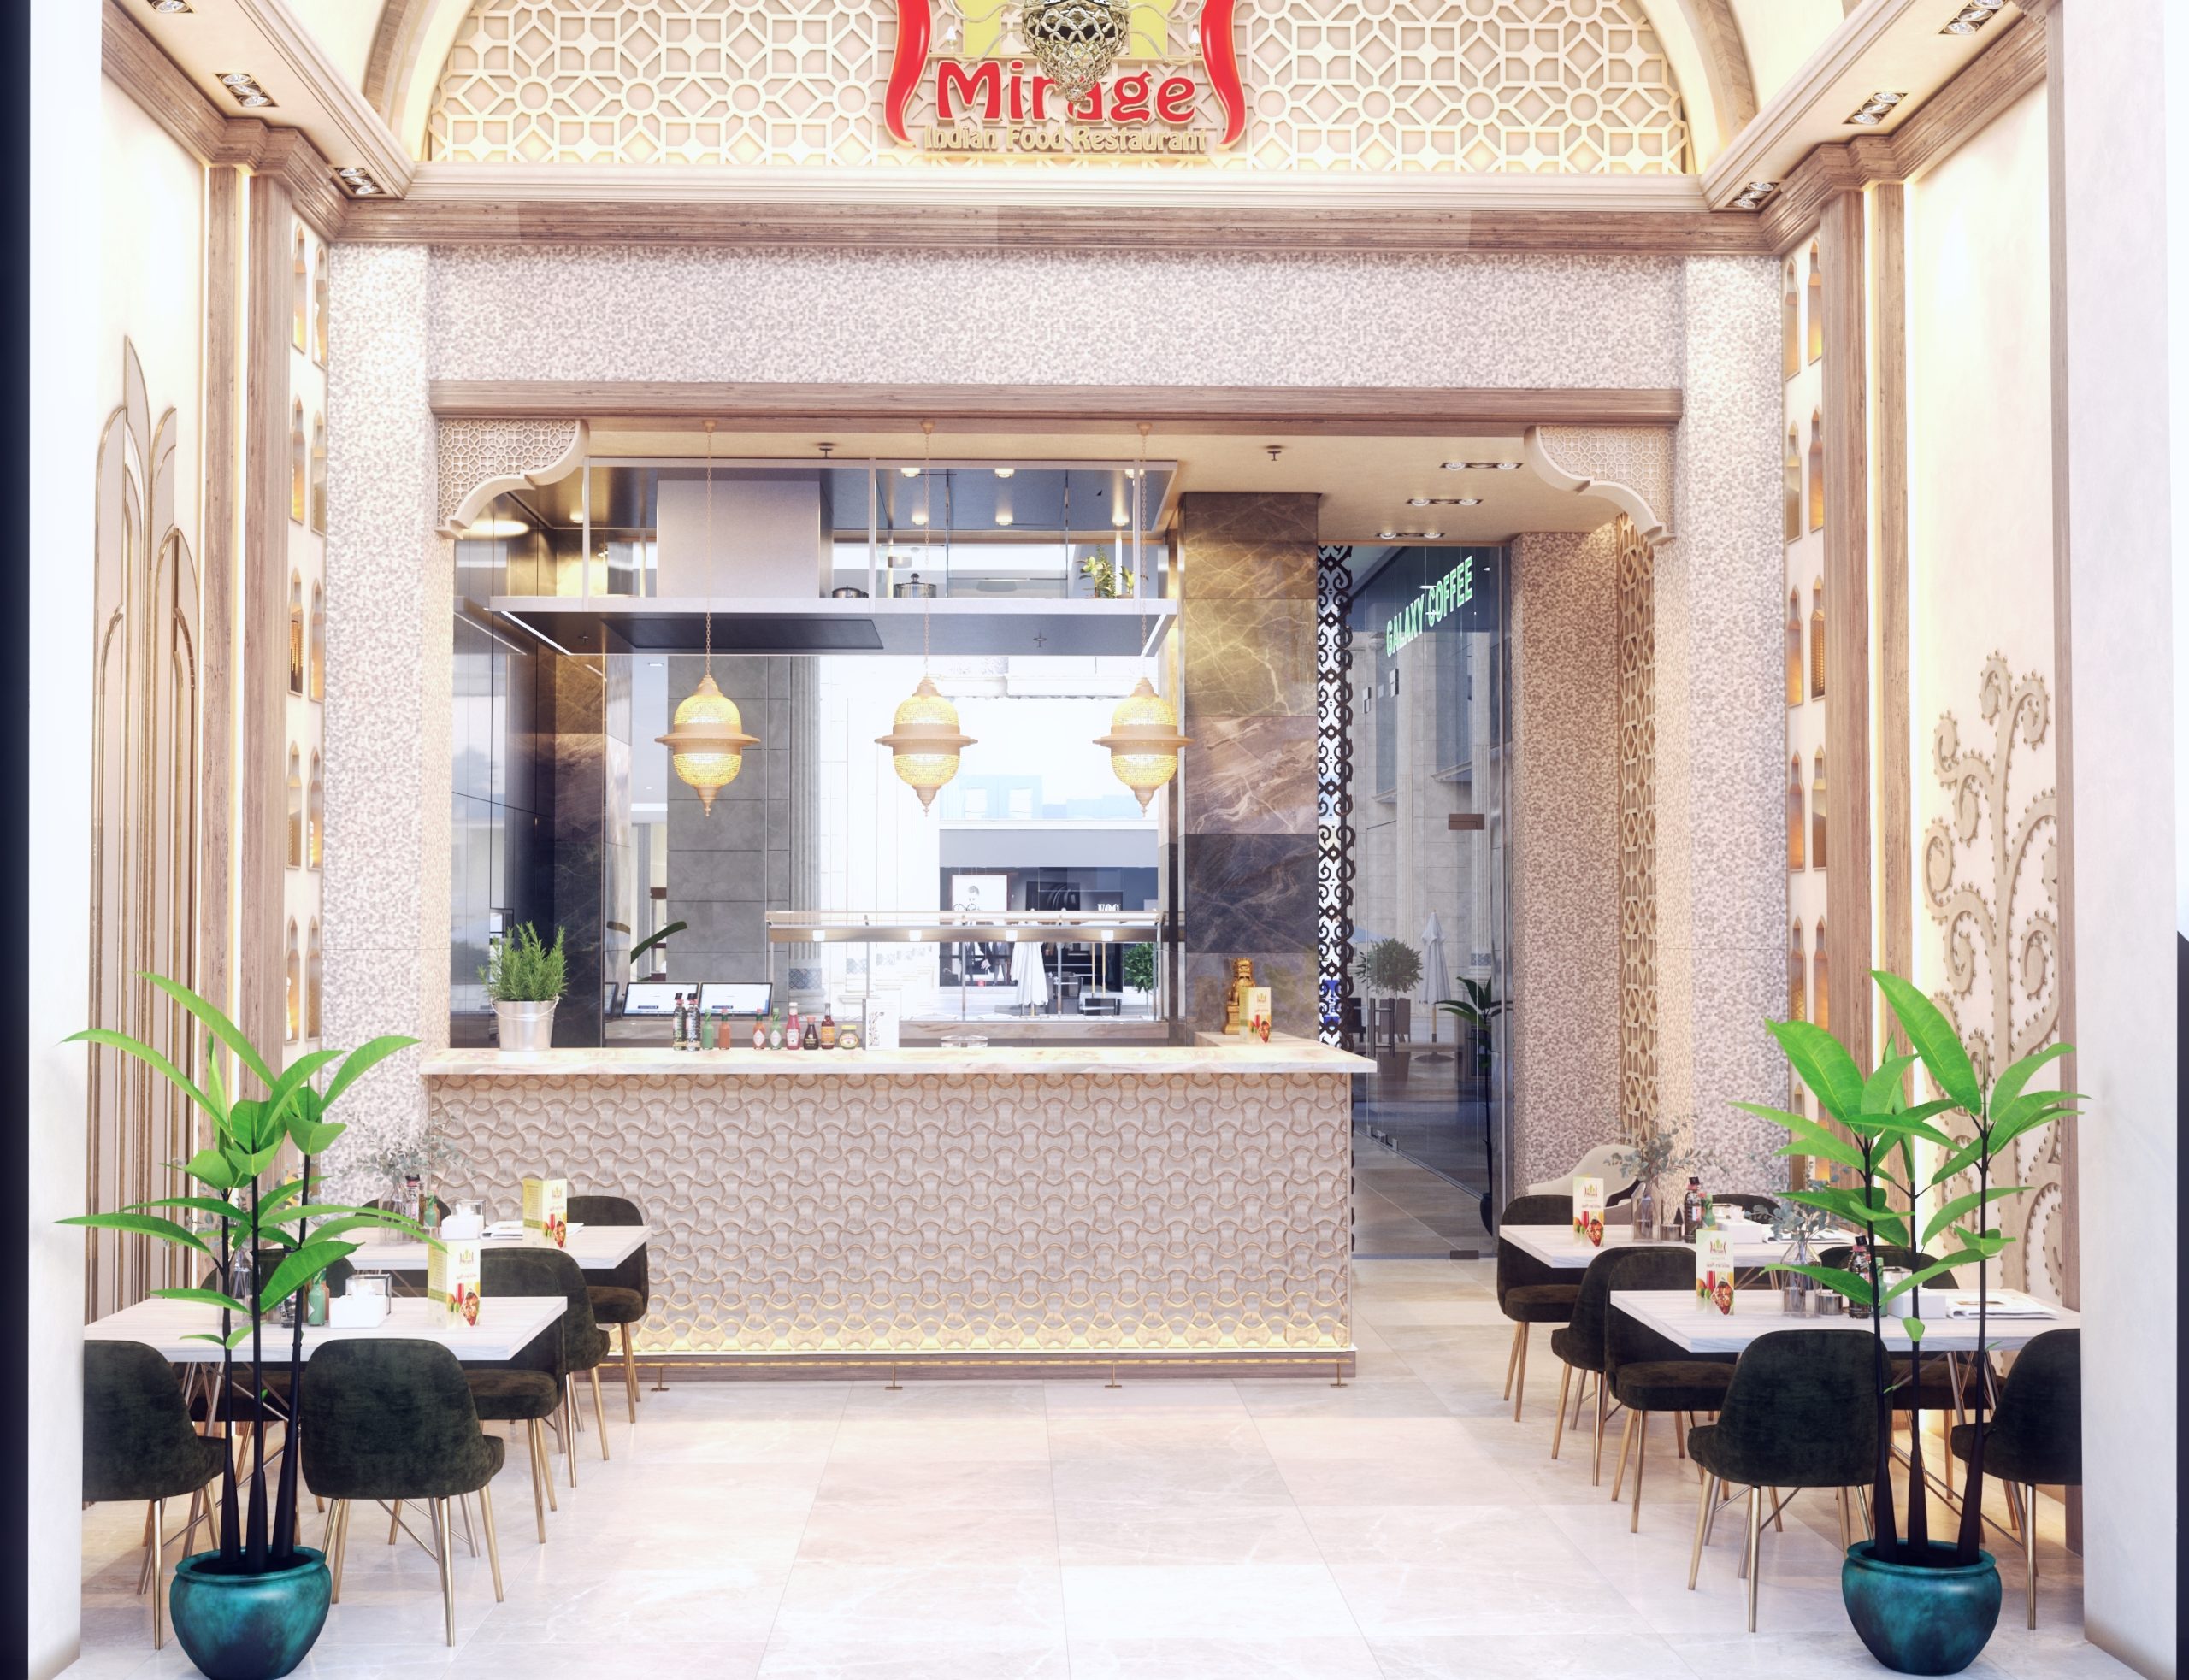 Mirage Restaurant (90)